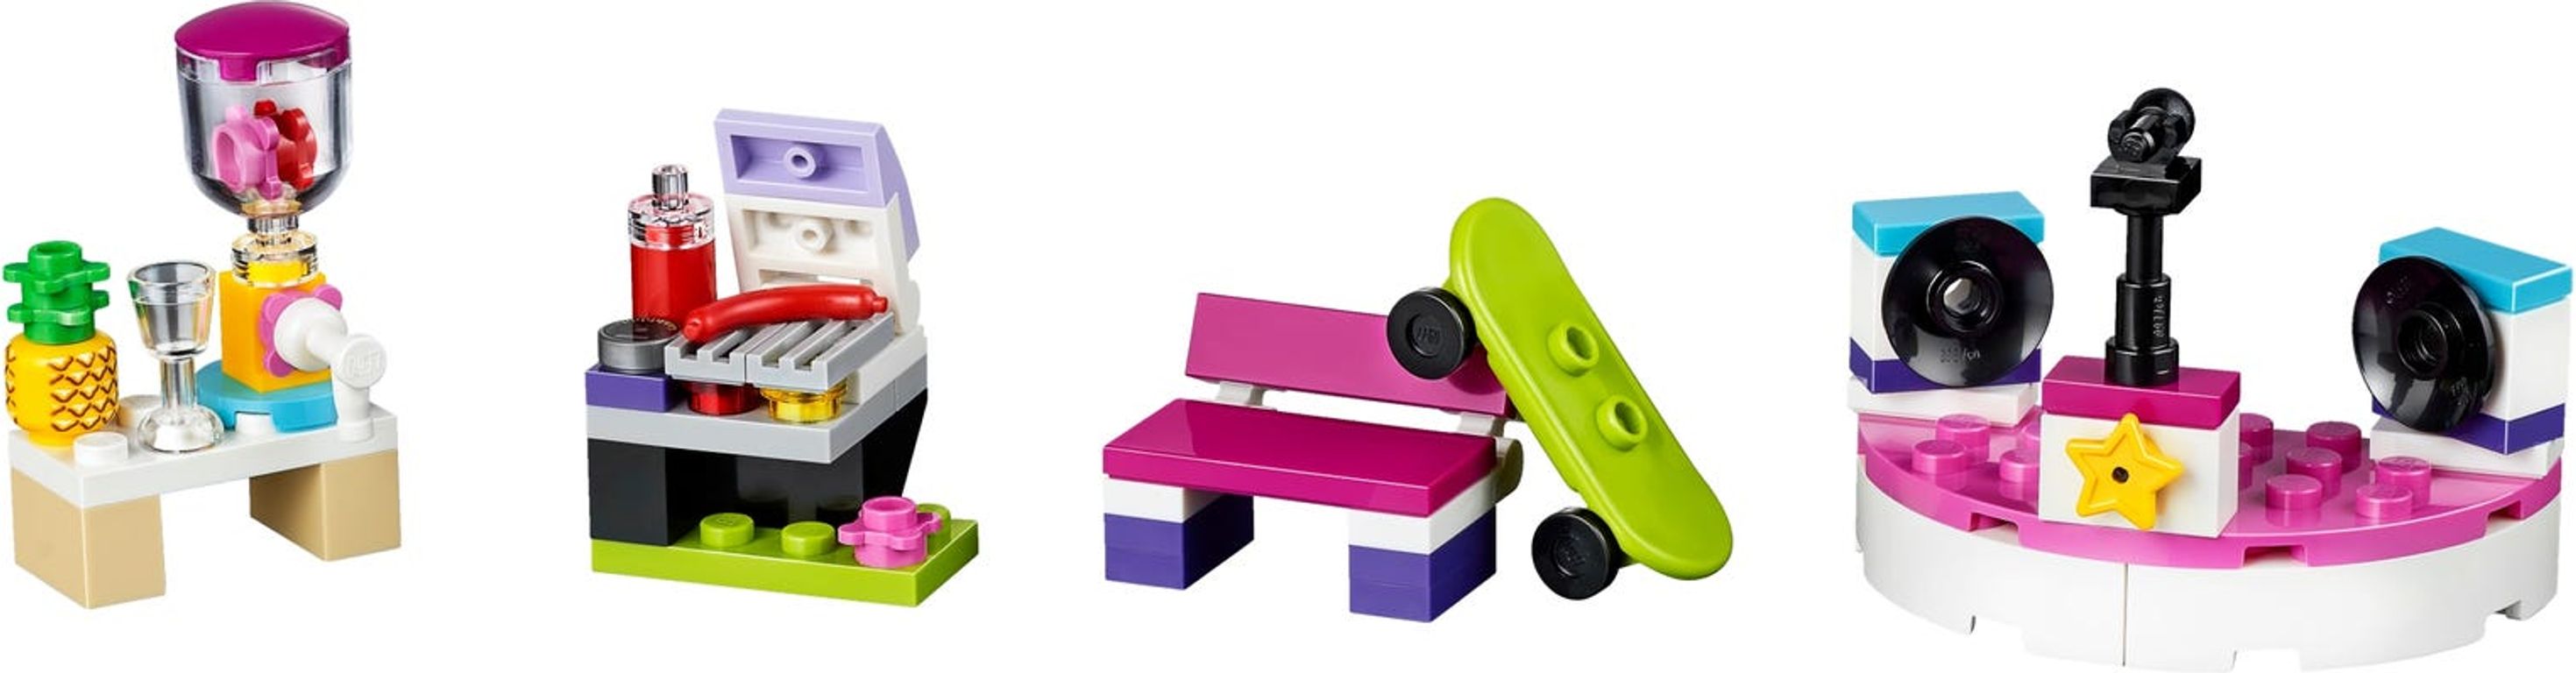 LEGO® Friends Set de accesorios de Heartlake City partes